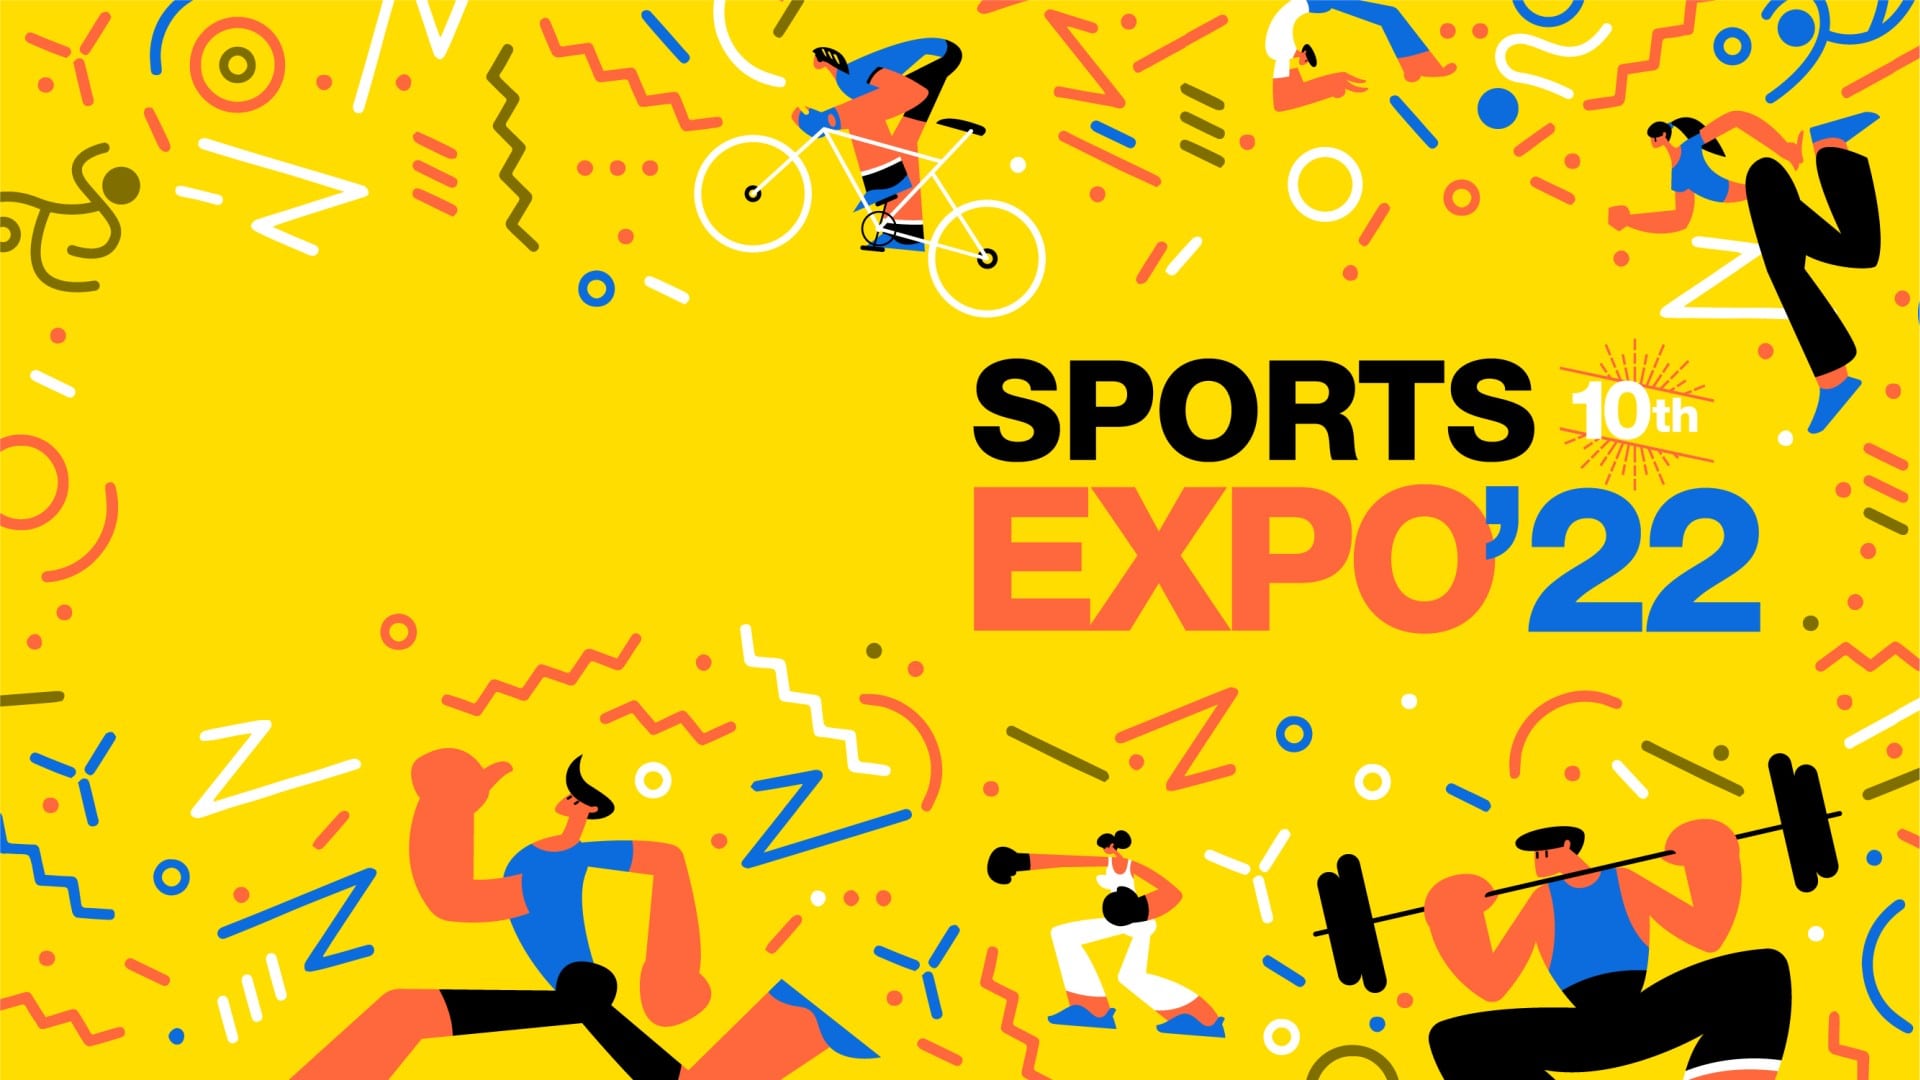 SportsExpo 2022